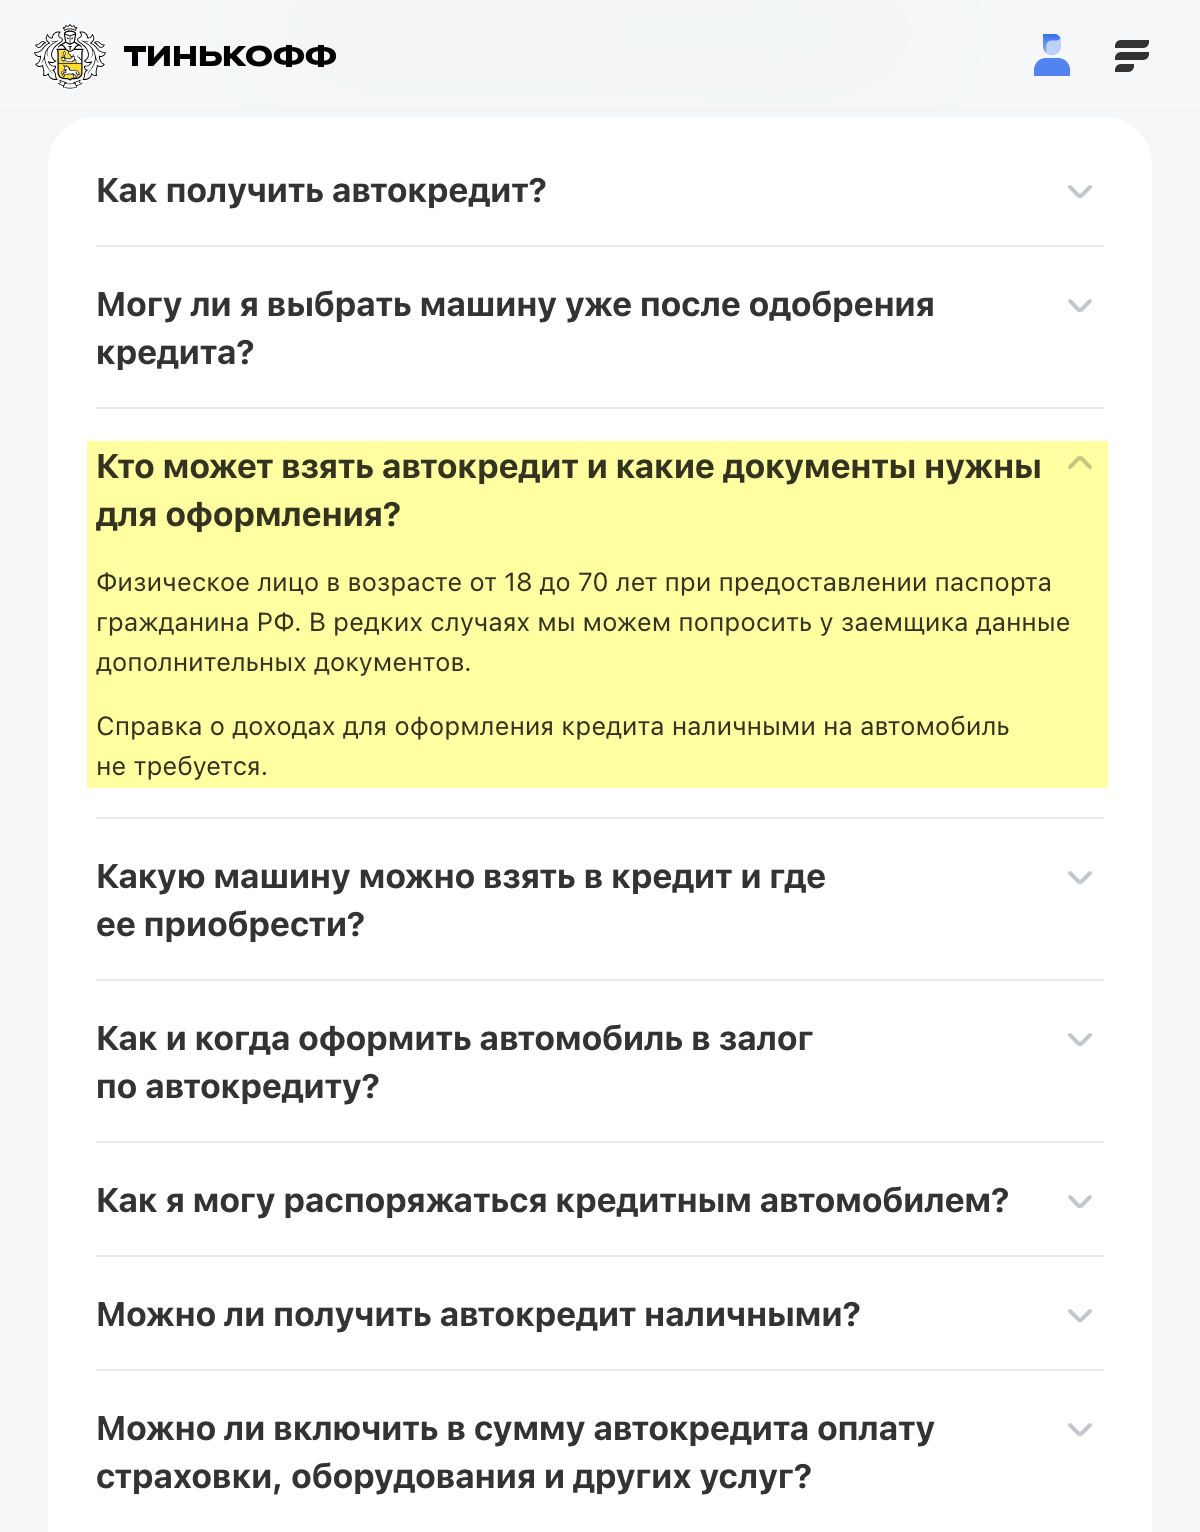 Автокредит в Тинькофф Банке можно получить в возрасте от 18 лет без подтверждения дохода. Источник: tinkoff.ru